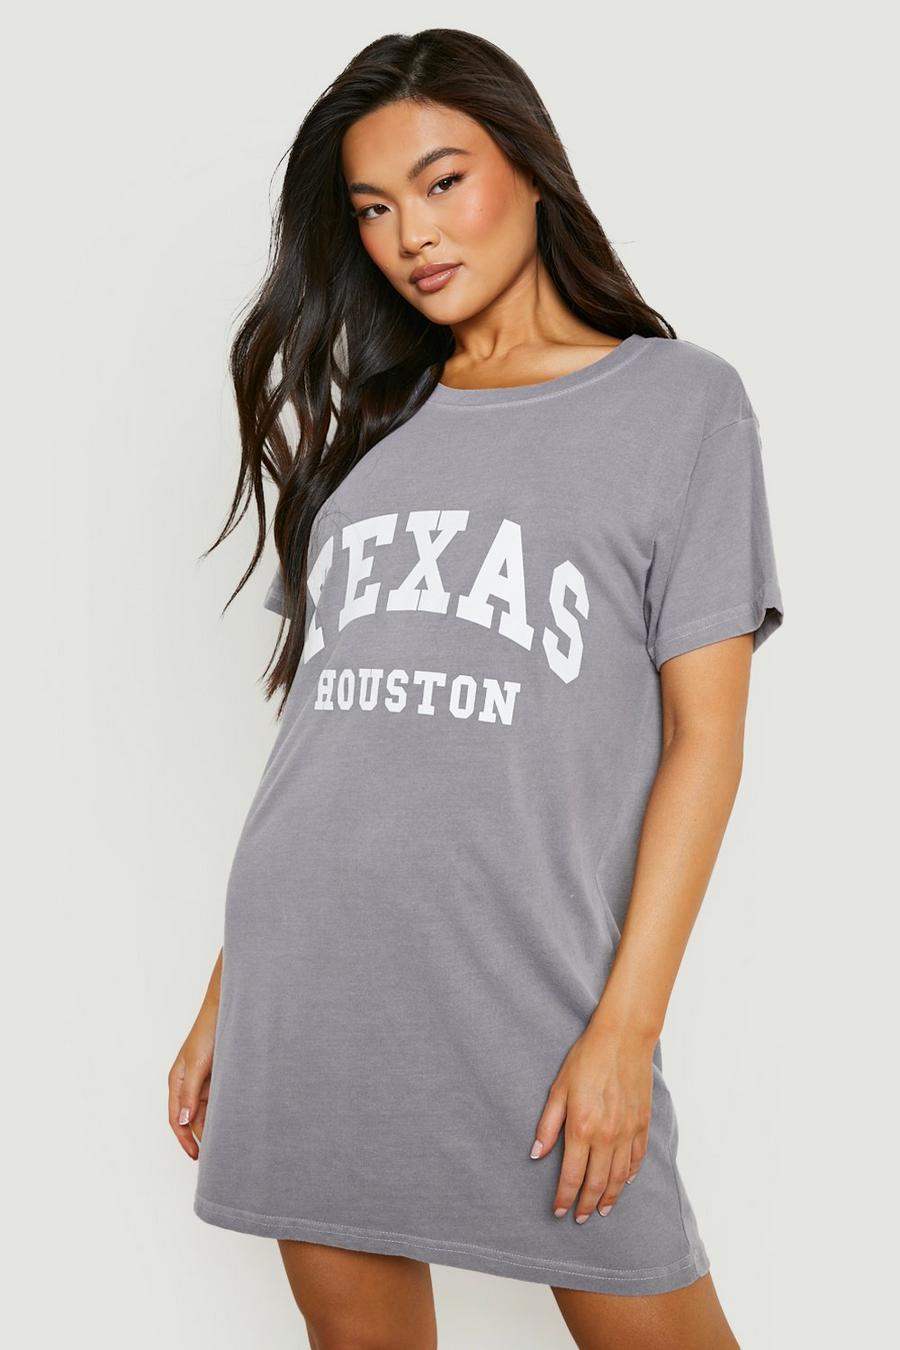 Vestido camiseta con estampado Texas Houston sobreteñido, Grey grigio